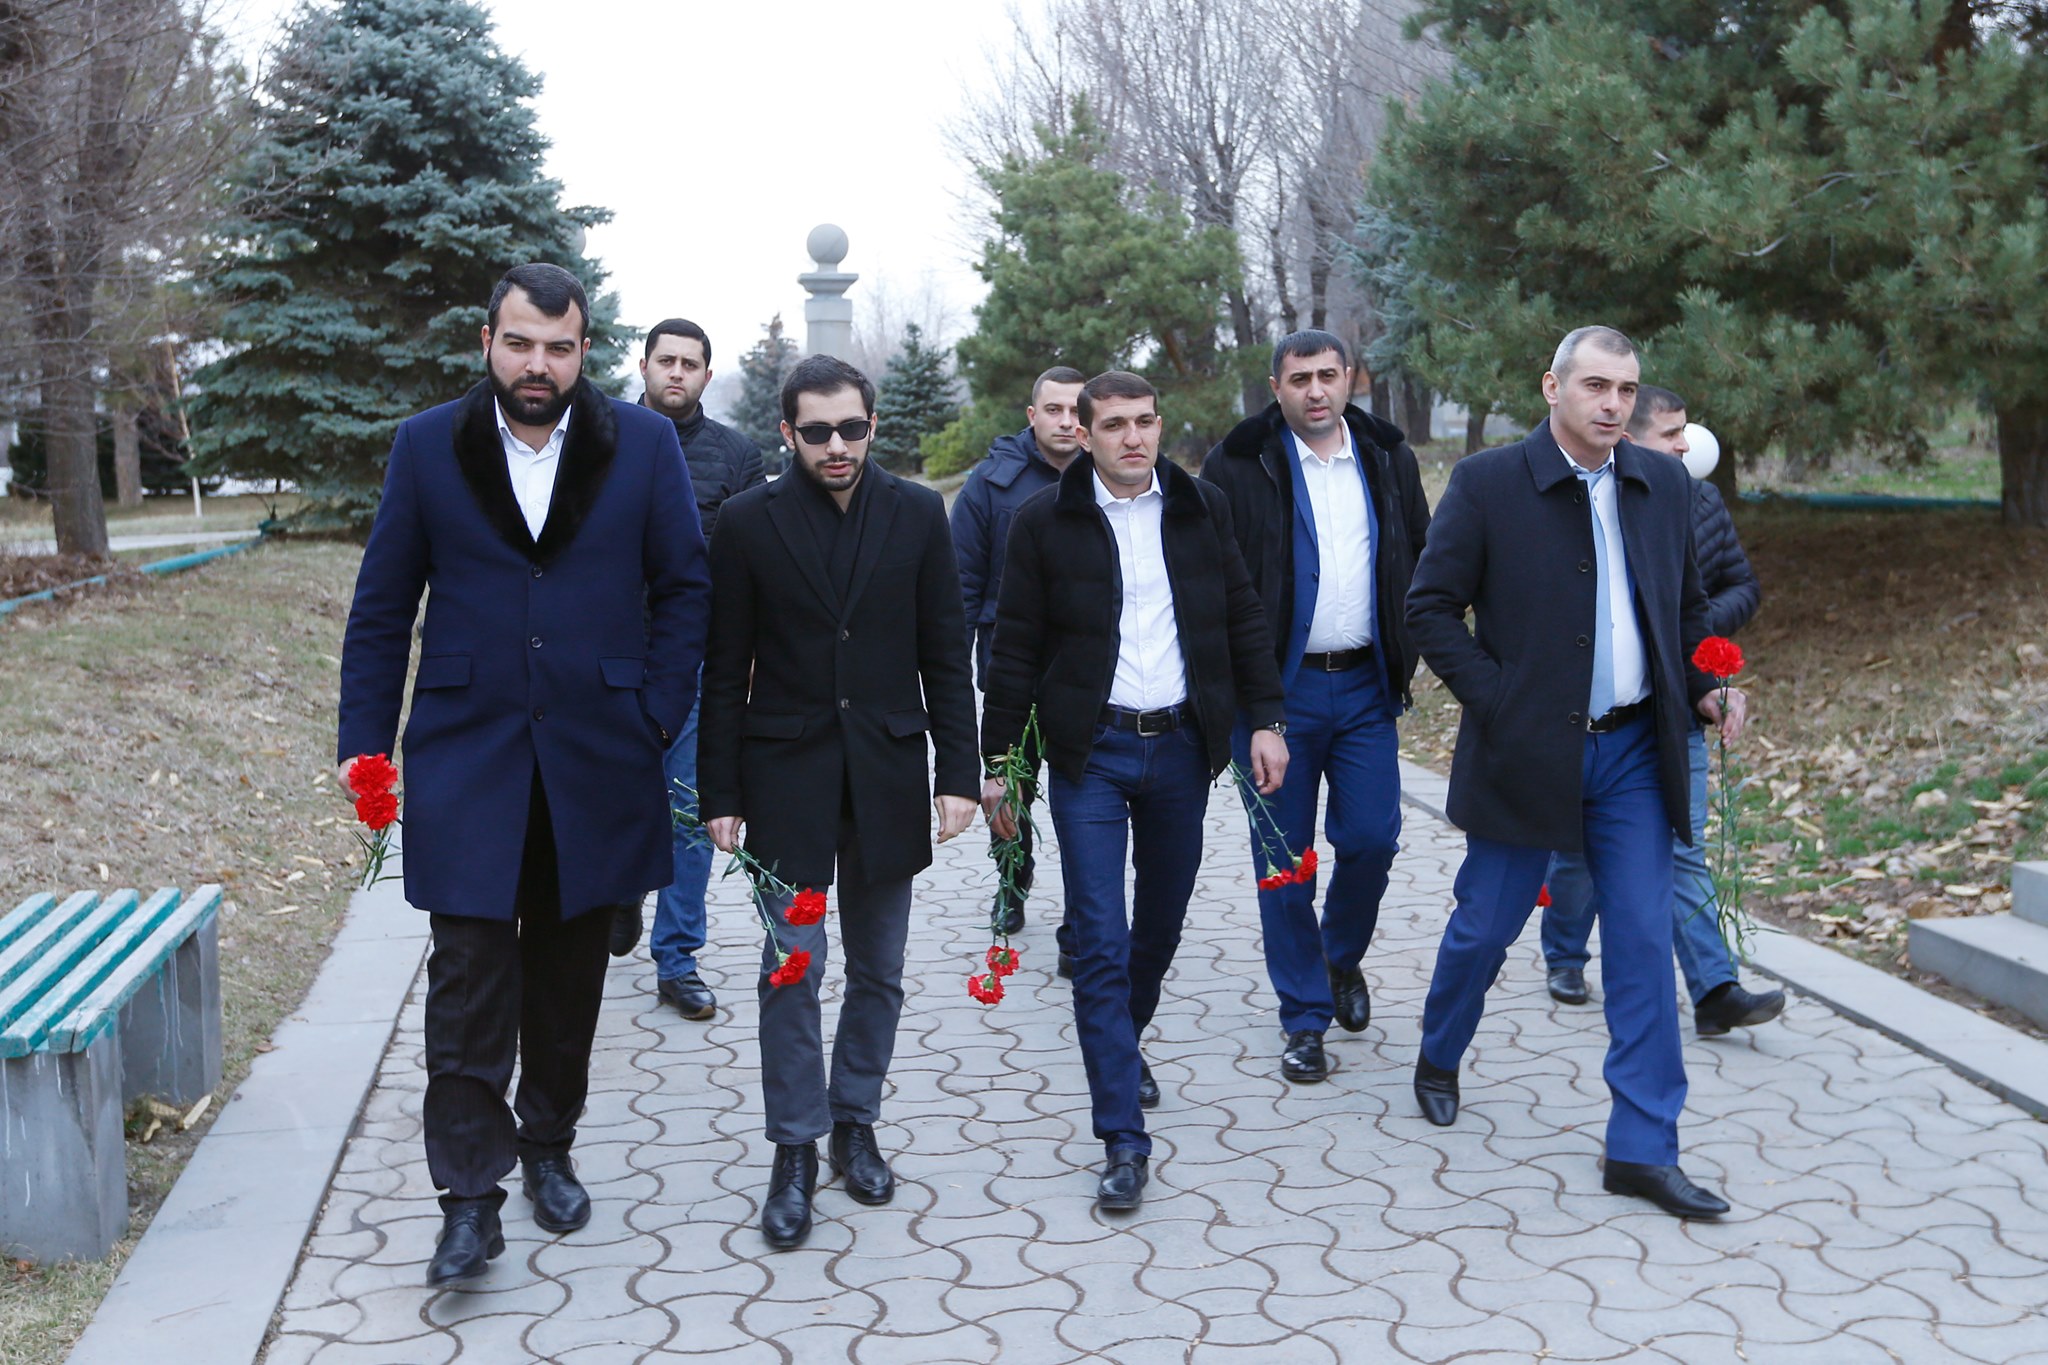 Երևանը շարունակելու է աջակցություն ցուցաբերել Ստեփանակերտին. հանդիպել են երկու քաղաքների ավագանիների անդամները